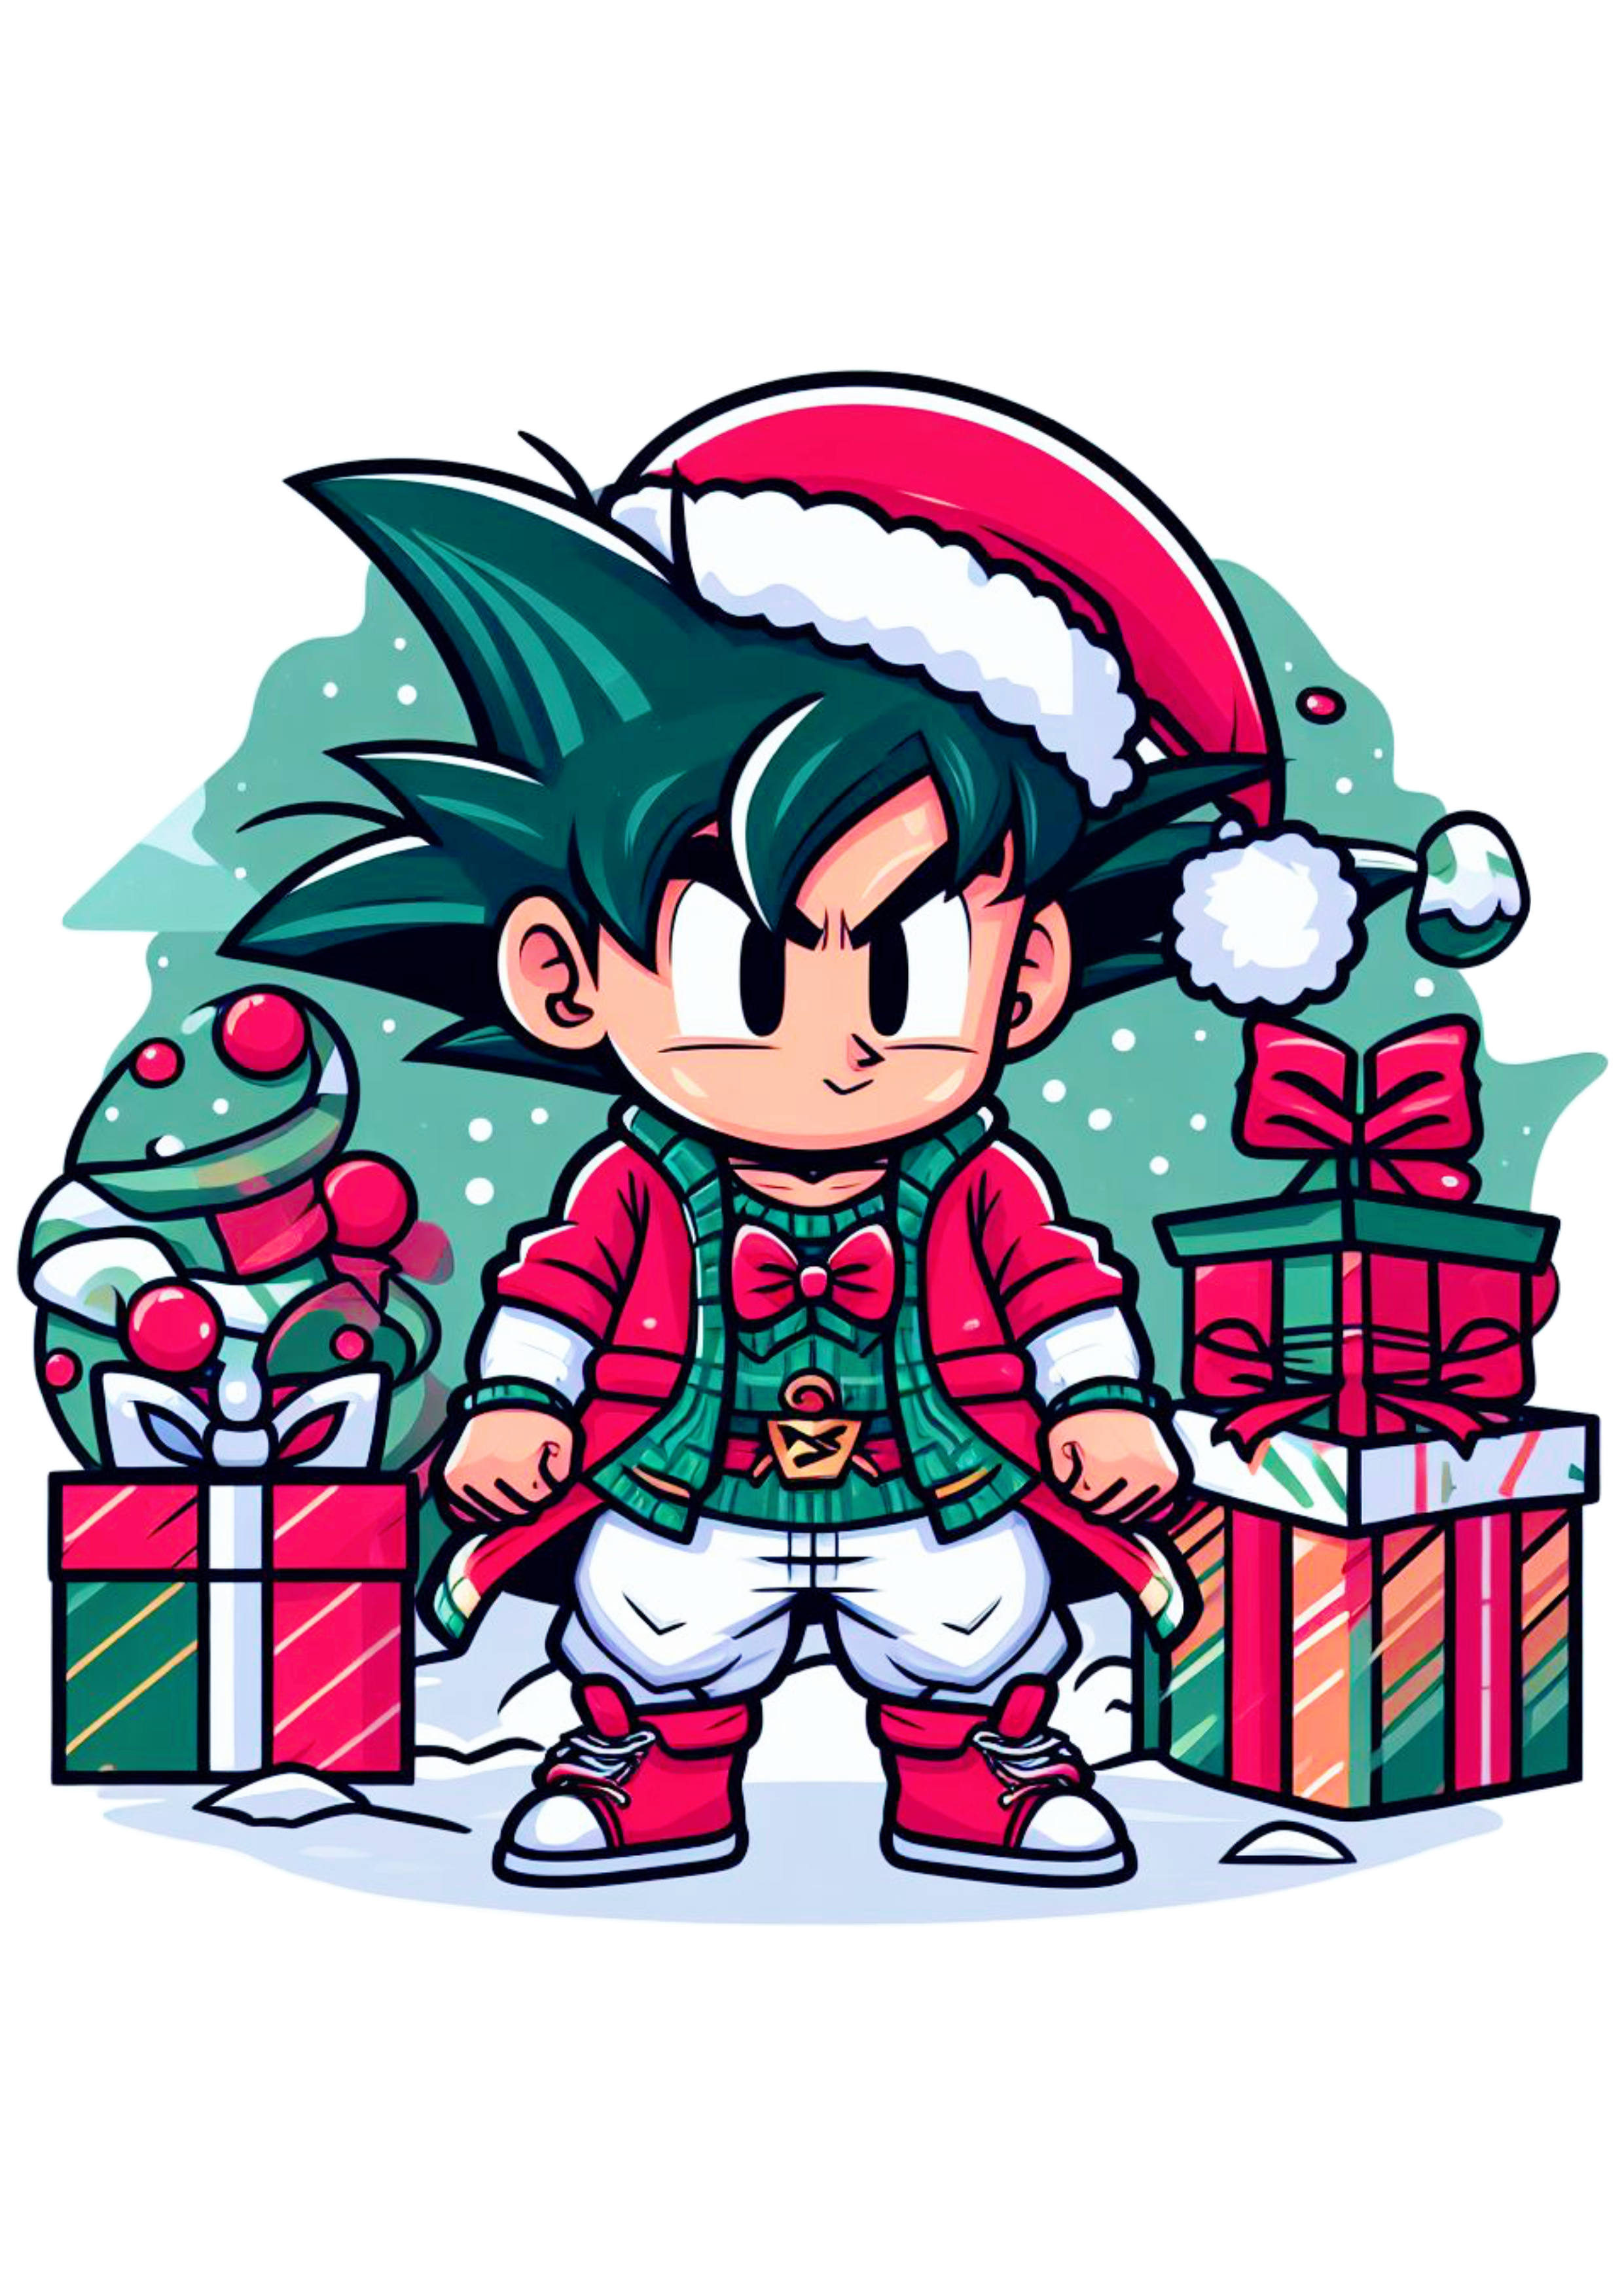 Dragon ball Z Goku pequeno com roupa de Papai Noel com presentes de natal desenho infantil png